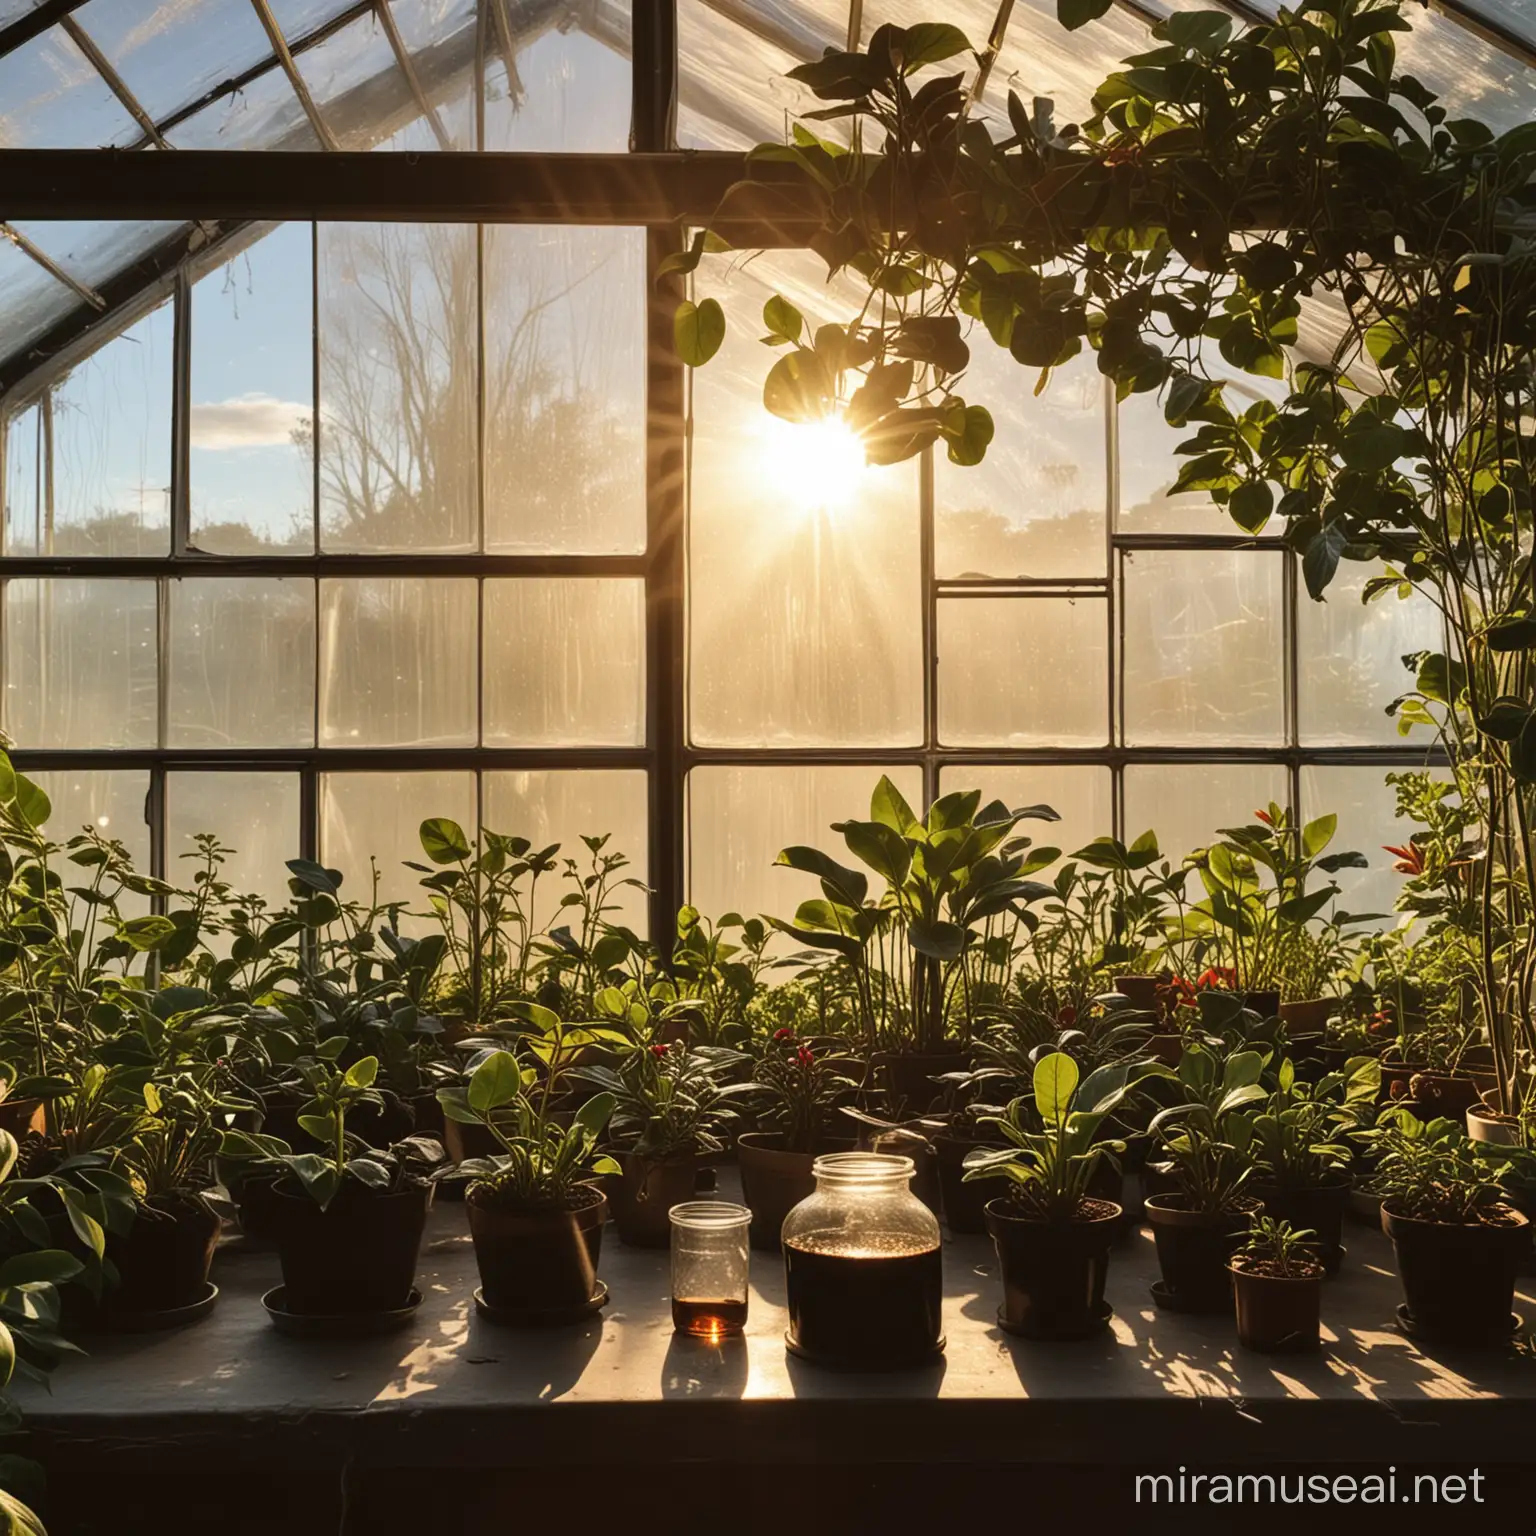 太阳光照在一个温室大棚内一个敞口玻璃烧杯，烧杯内只有一点点黑色的油，其他的一点都没有，烧杯周围是种植的盆栽植物